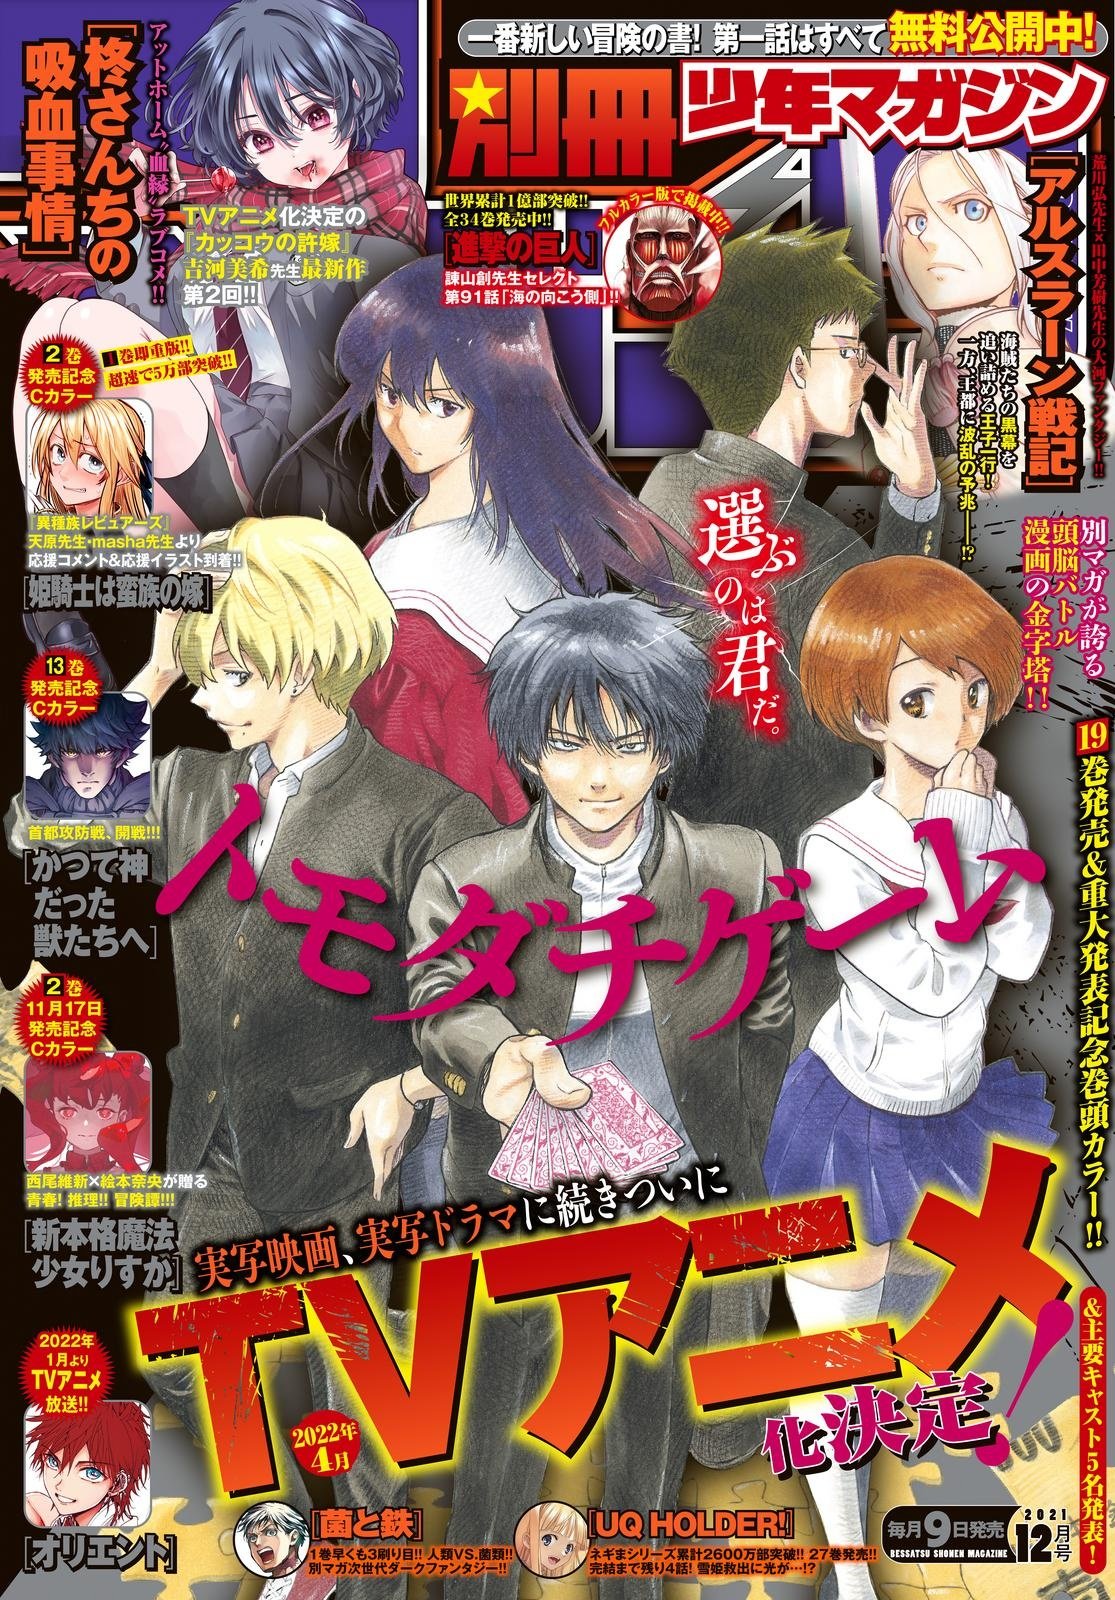 Tomodachi Game  Anime, Manga covers, Manga games